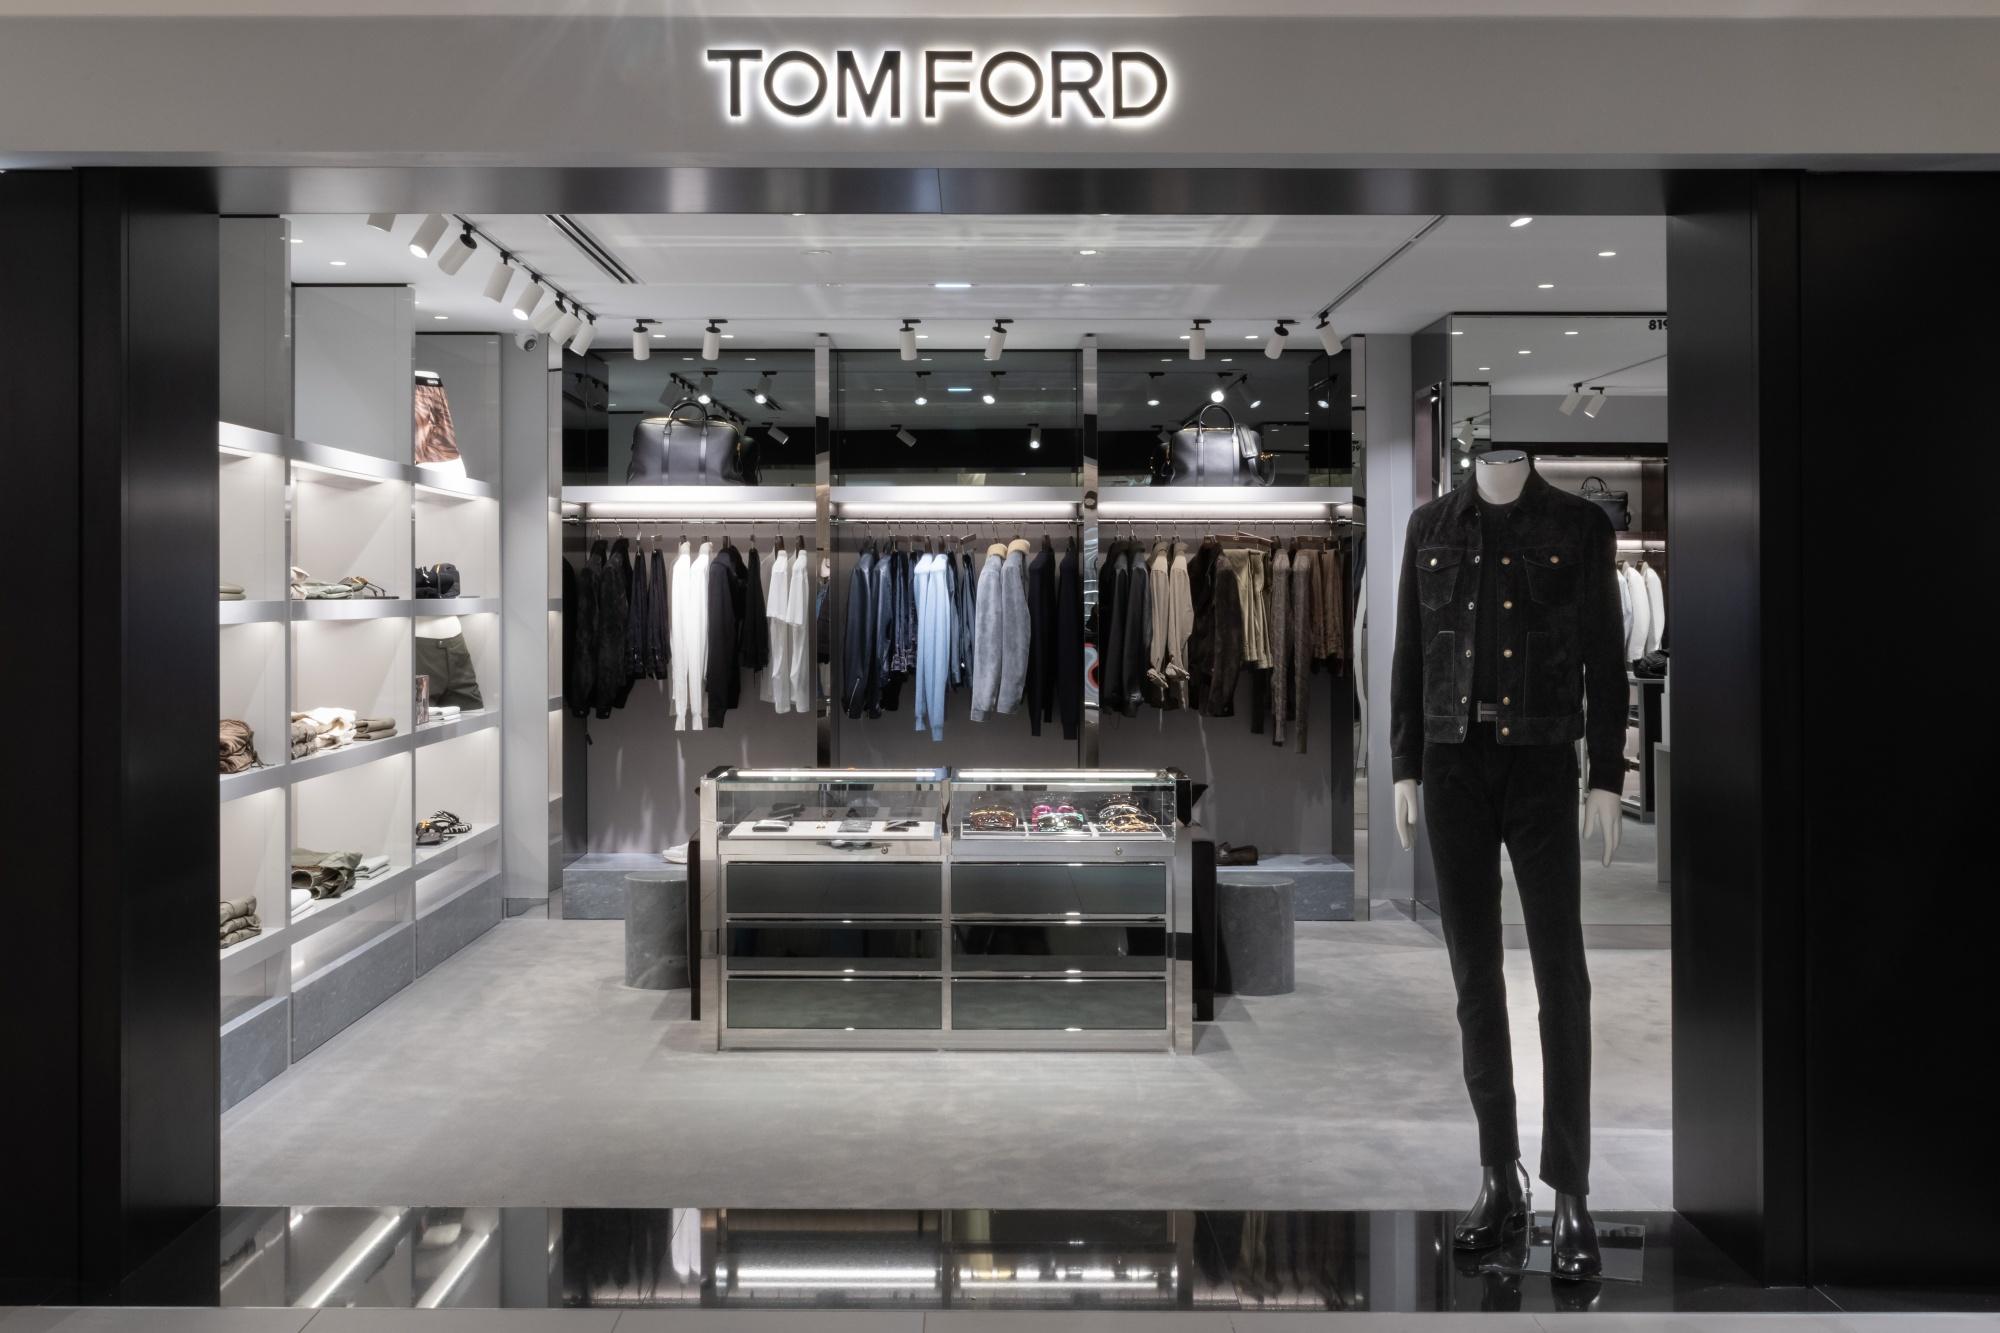 Tom Ford : Vêtements Homme Paris 9ème 75009 (adresse, horaire et avis)